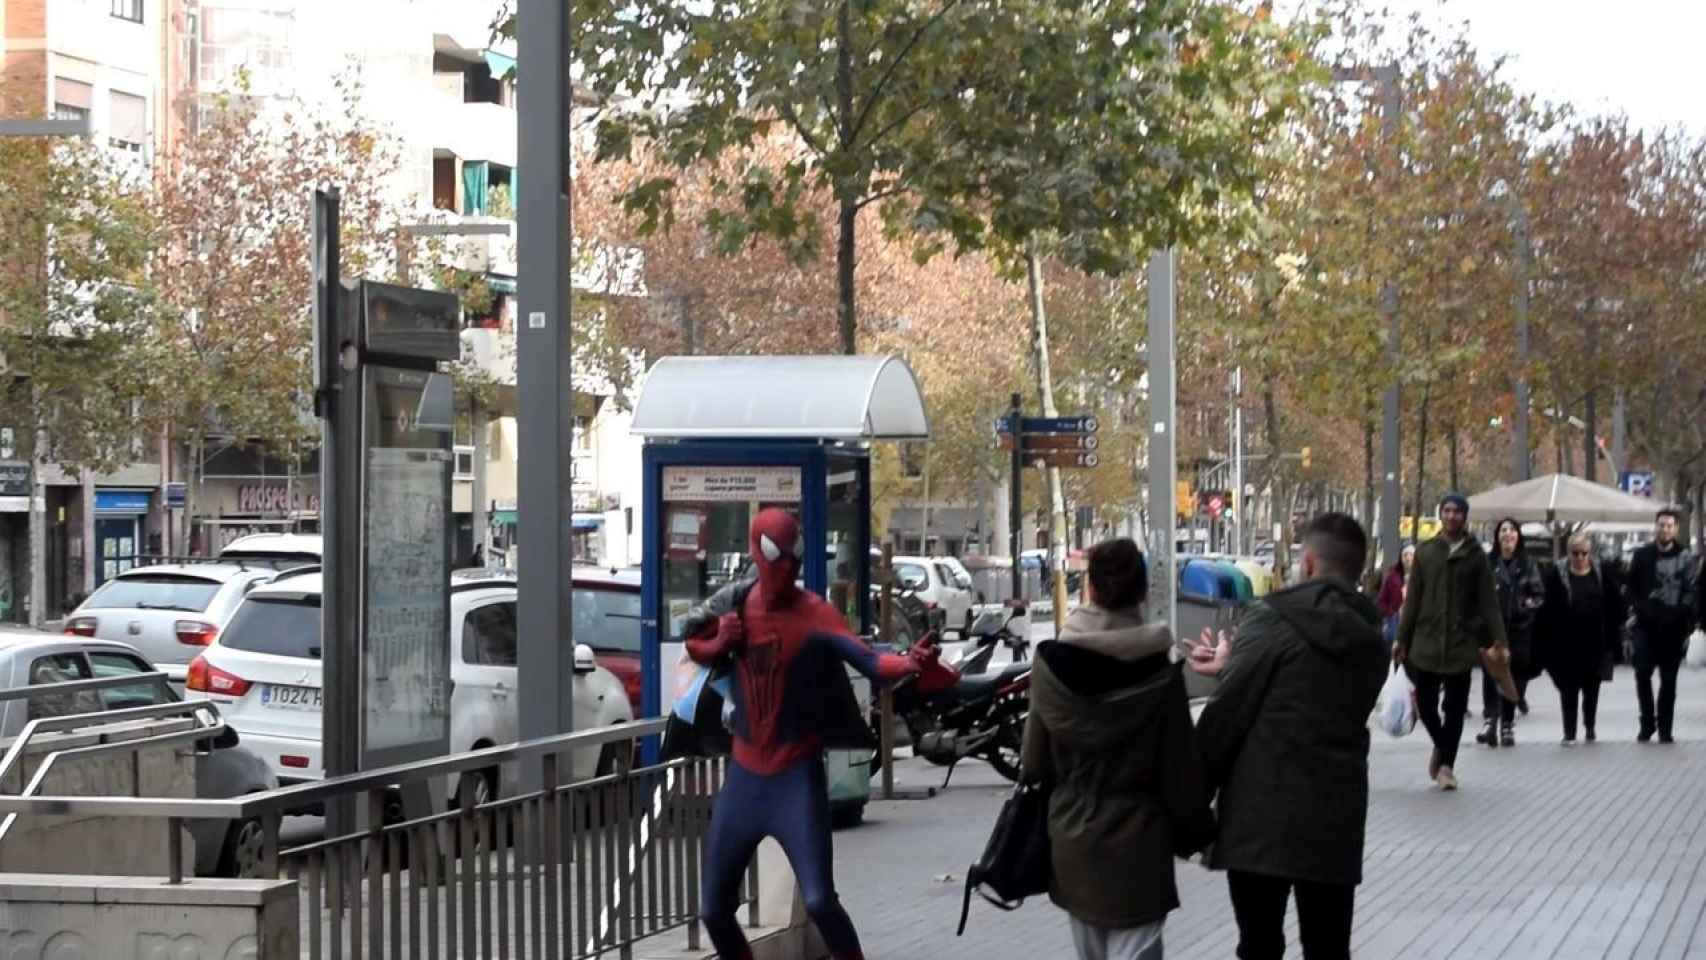 El misterioso Spiderman quiere hacer el bien en Barcelona / Spidey BCN